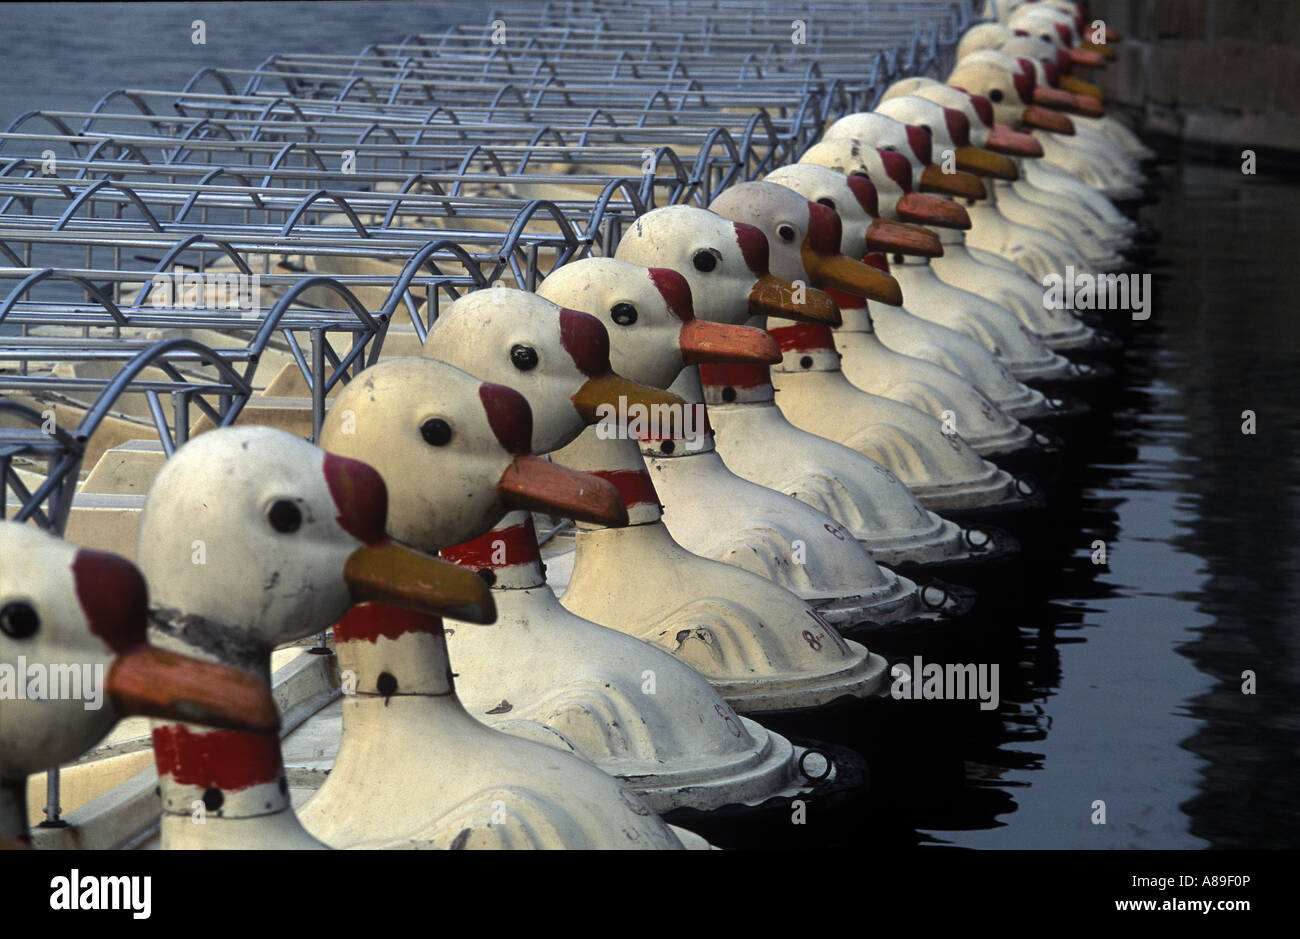 Tretboote in Form von Enten auf einem See in der Nähe von Sommerpalast, Peking, China Stockfoto